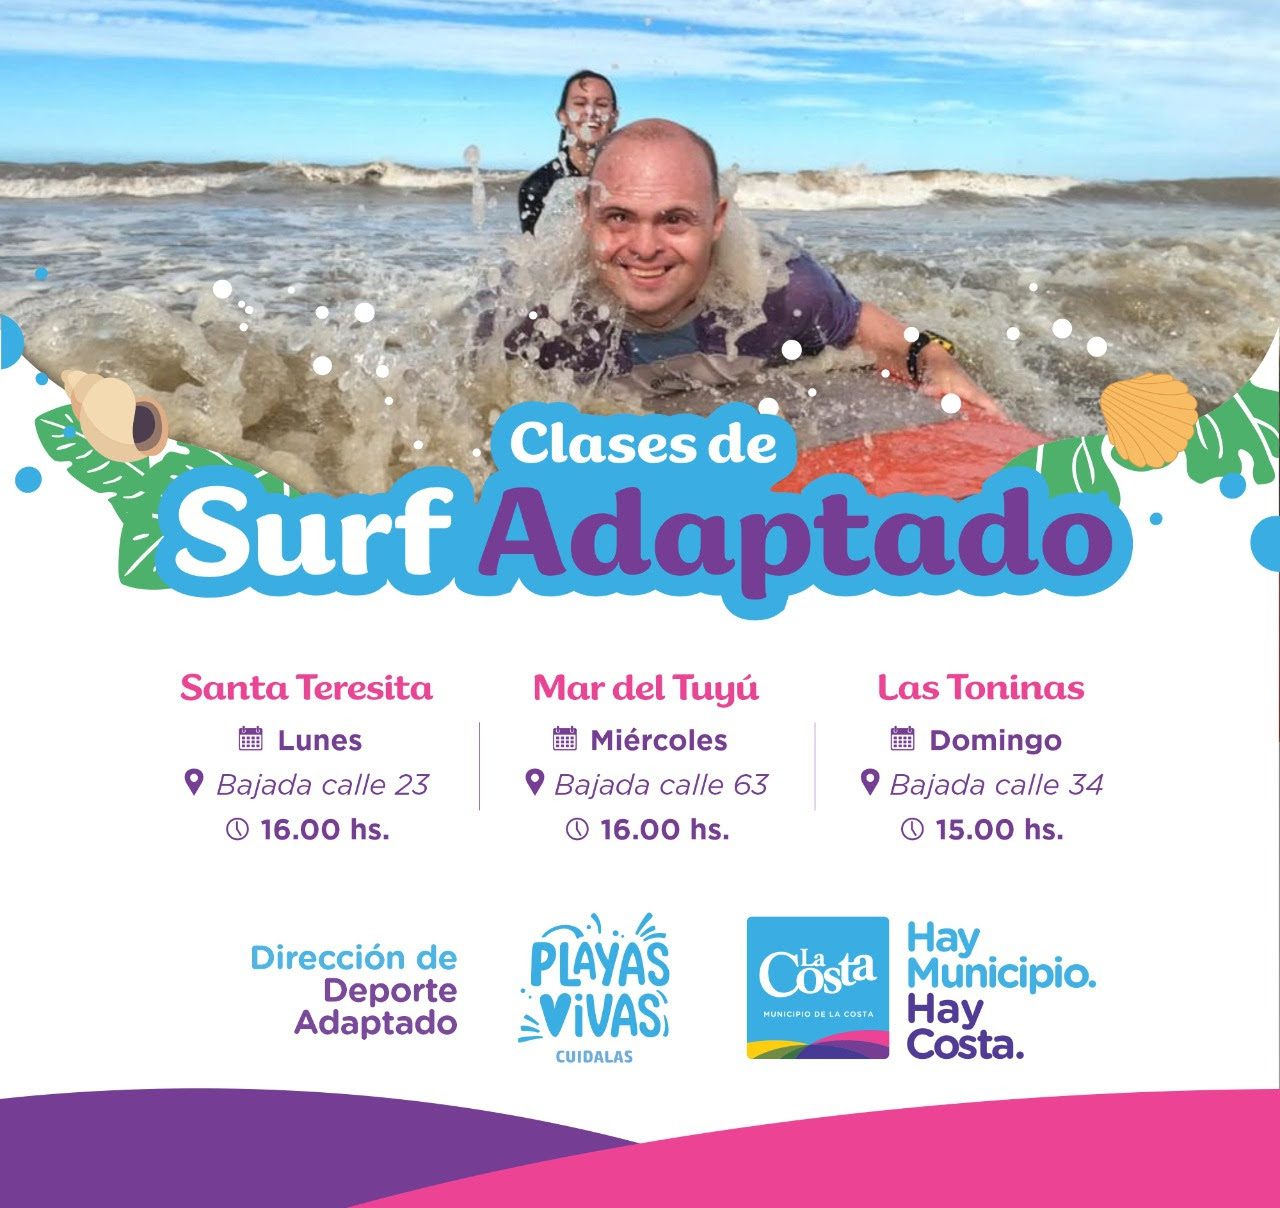 La Municipalidad de La Costa ofrece clases gratuitas de Surf Adaptado